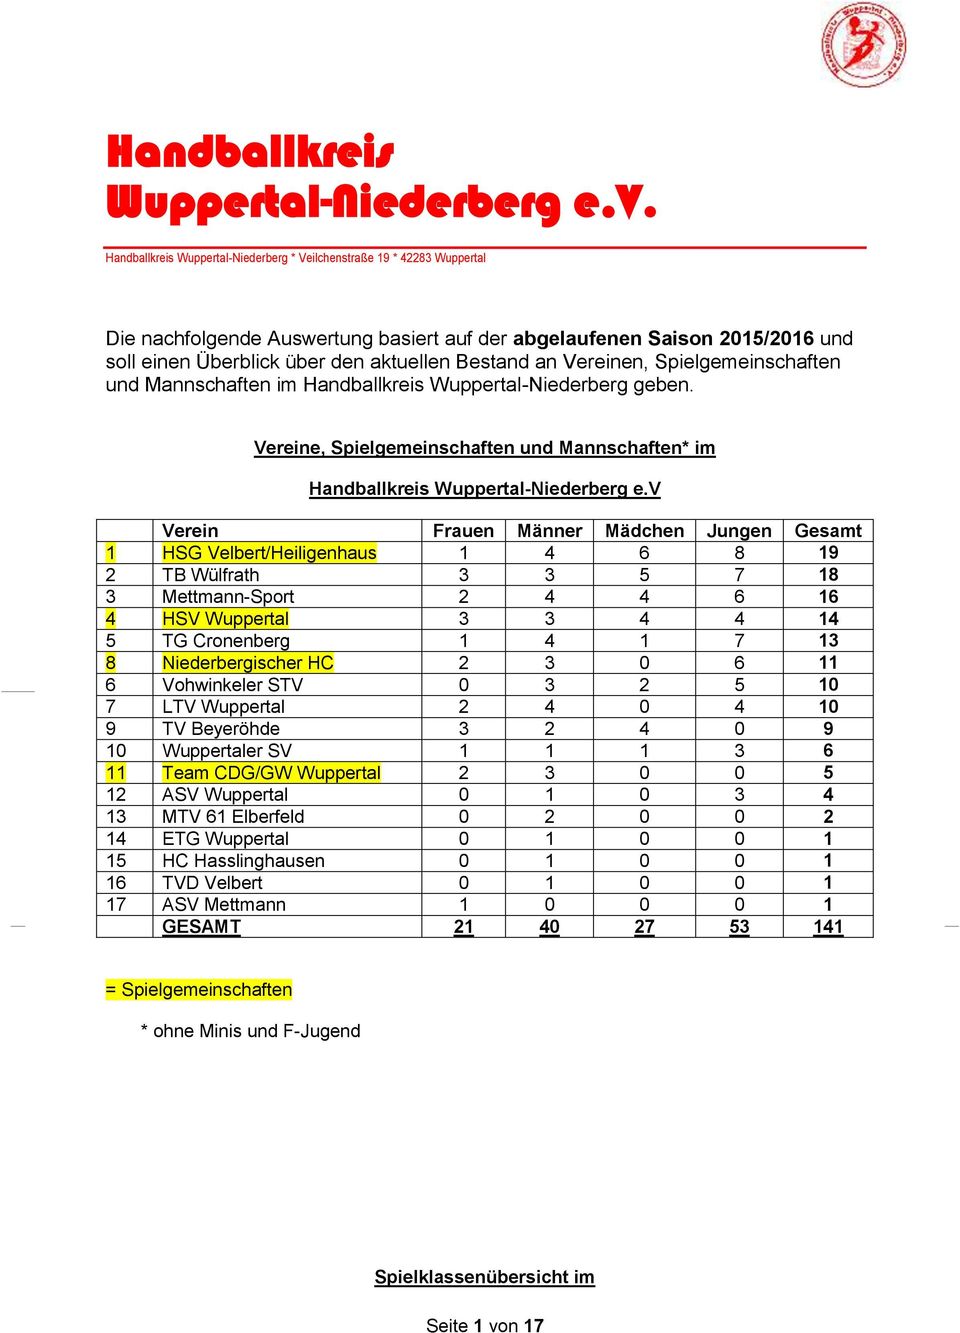 an Vereinen, Spielgemeinschaften und Mannschaften im Handballkreis Wuppertal-Niederberg geben. Vereine, Spielgemeinschaften und Mannschaften* im Handballkreis Wuppertal-Niederberg e.